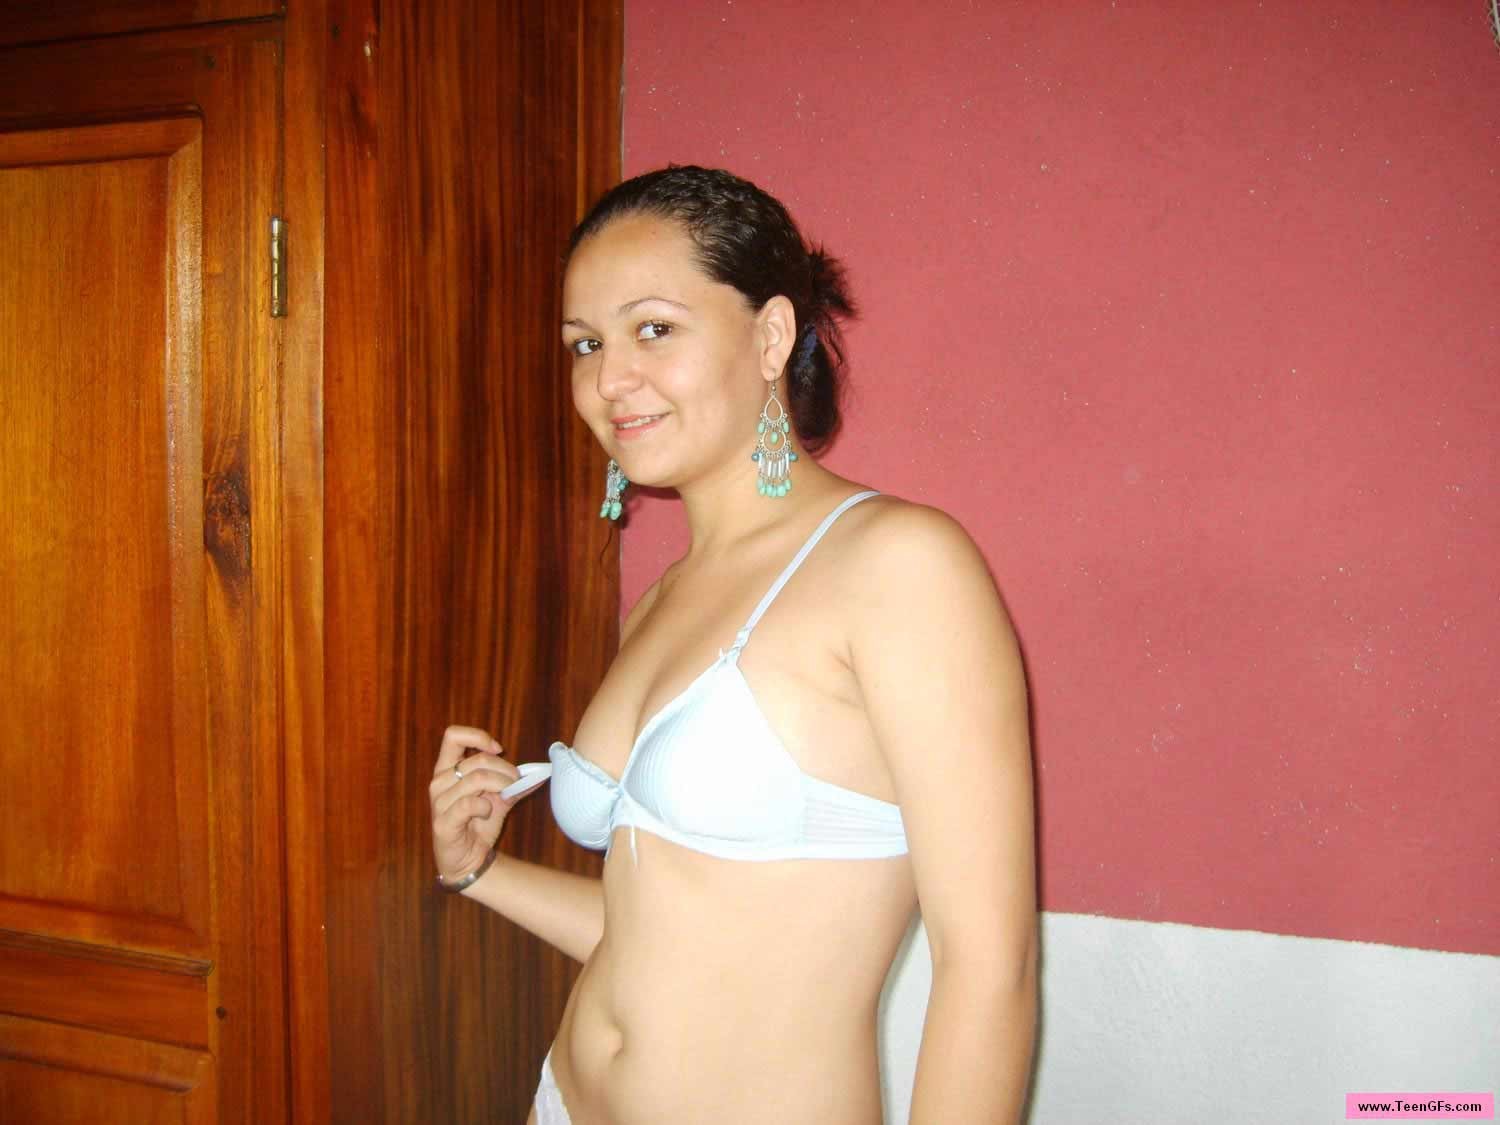 Teenie bruna latina in posa su sexy lingerie bianca
 #70413805